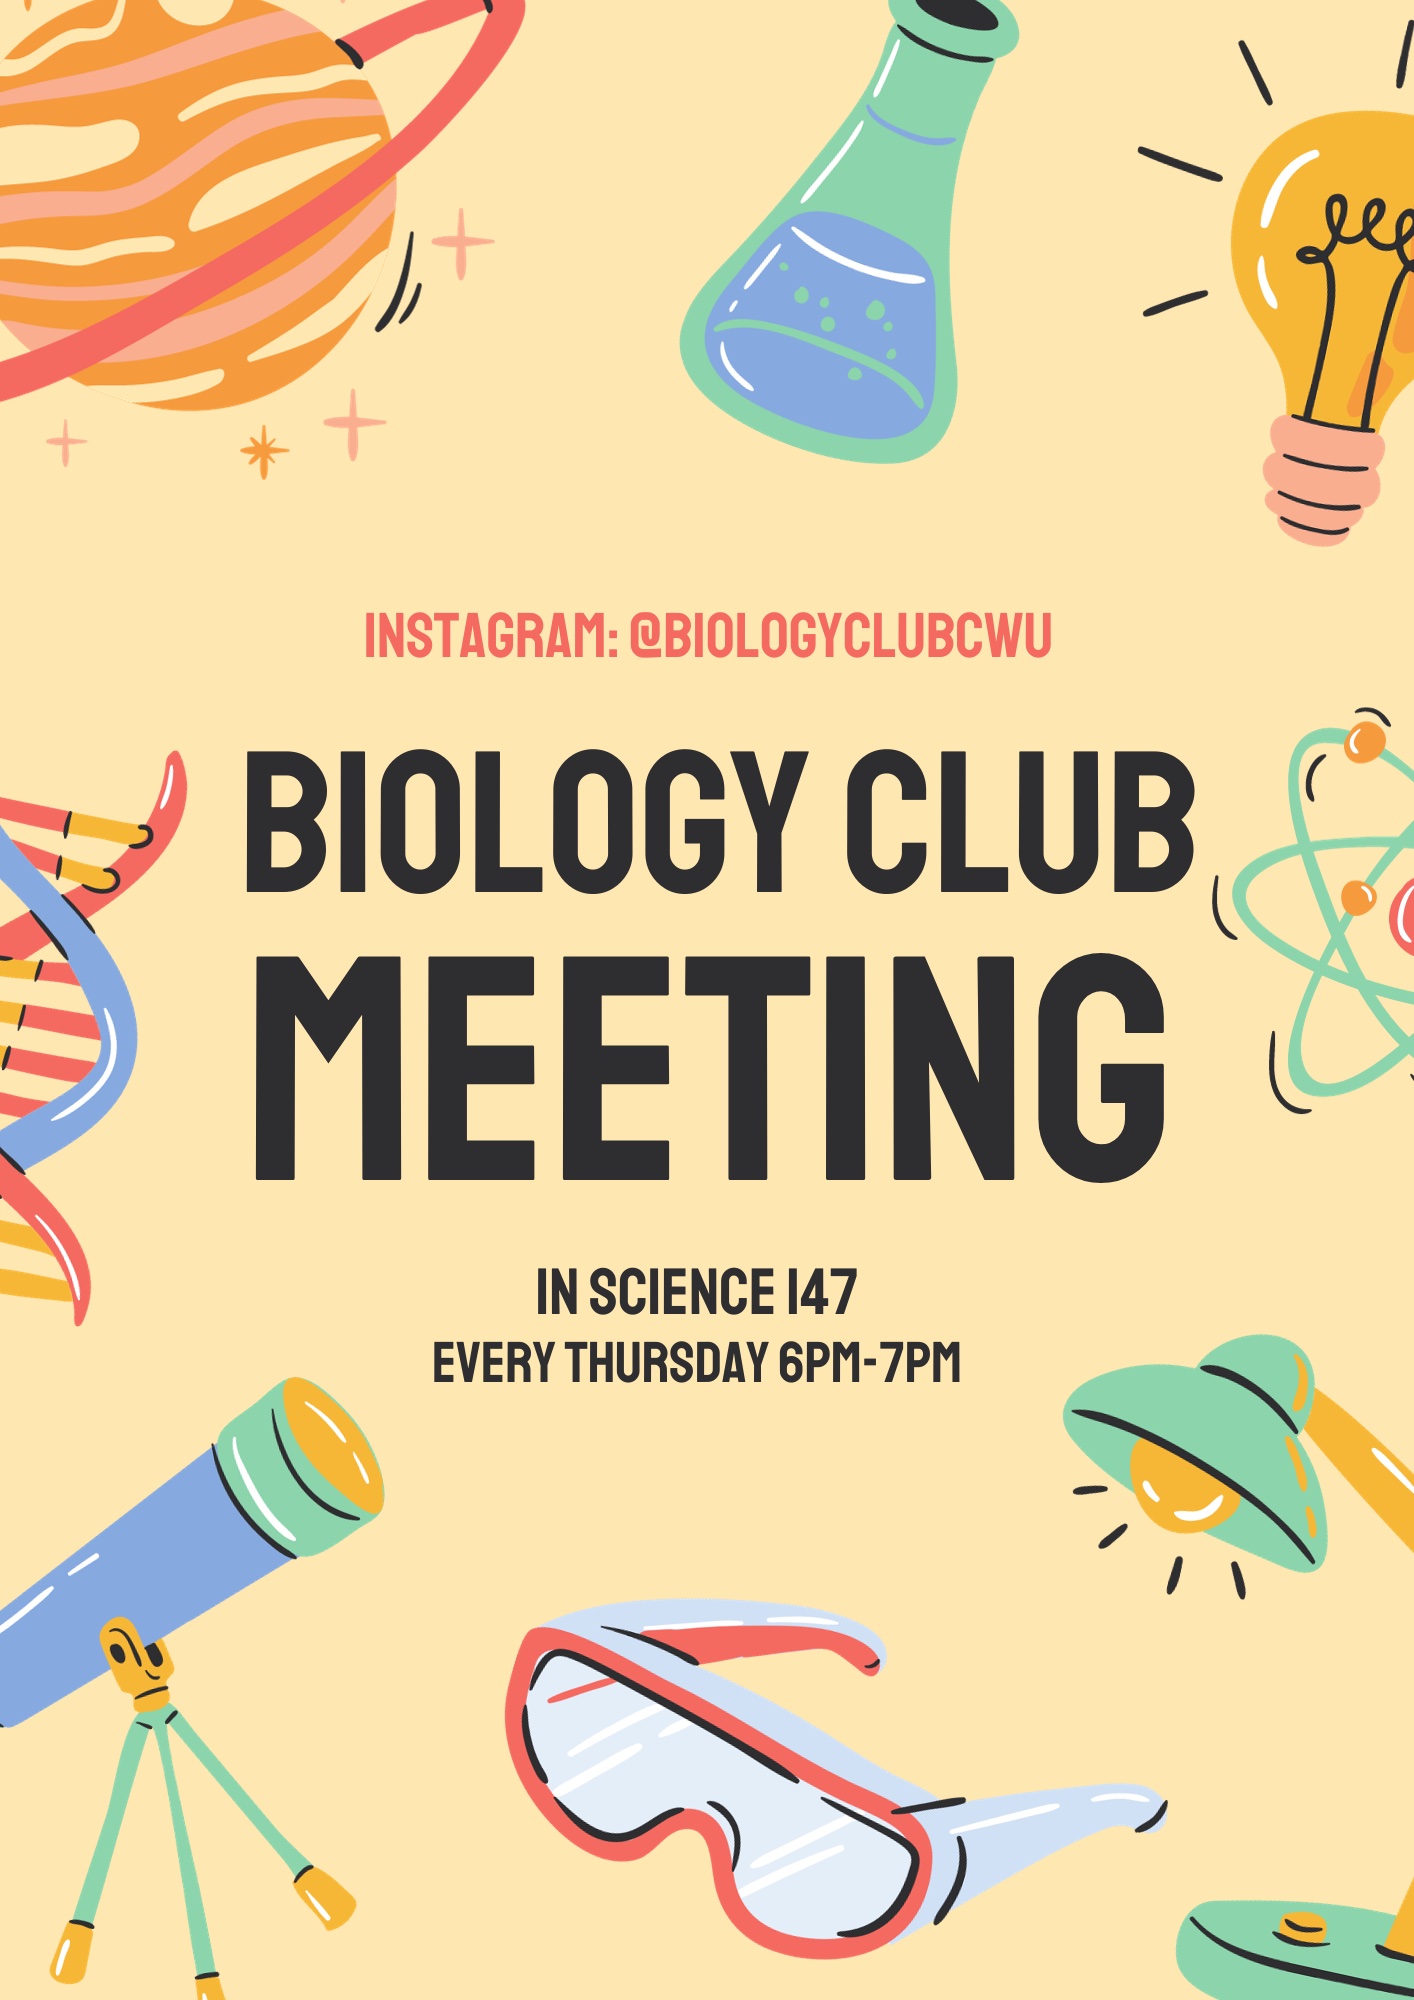 cwu-biology-club-meeting-times.jpg